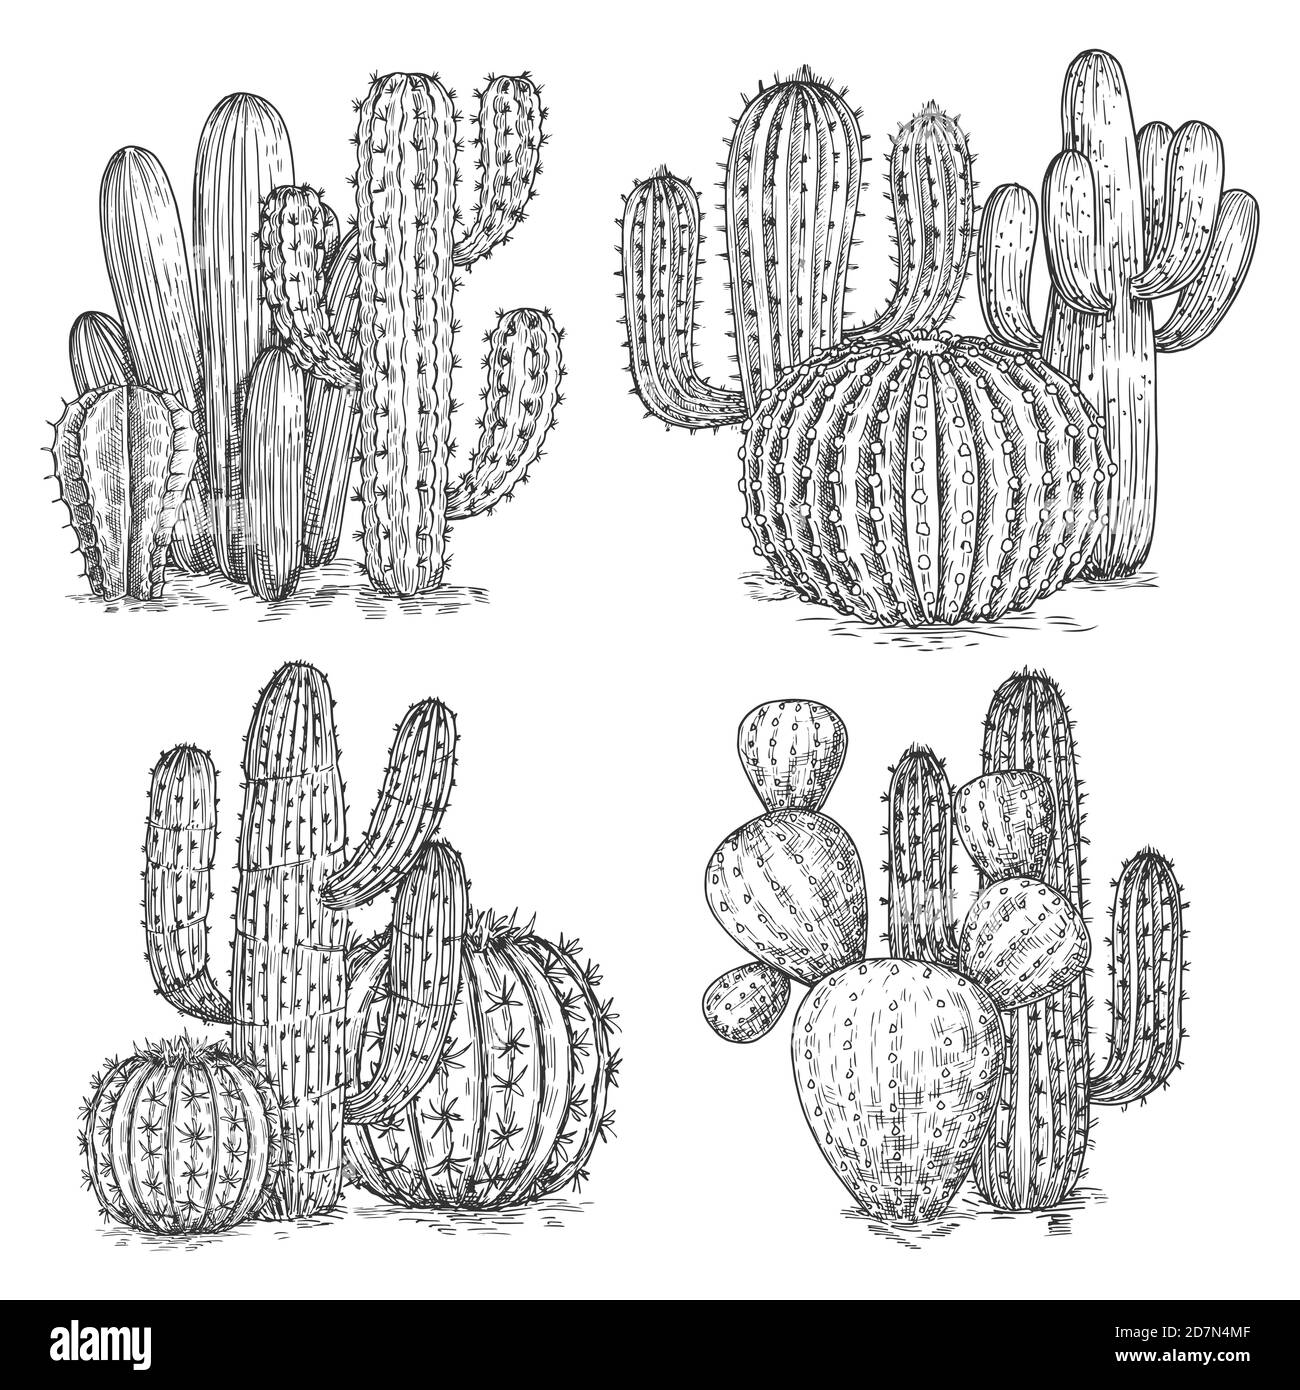 Handskizzierte Kaktusvektordarstellung. Wüstenblumen Kompositionen isoliert auf weißem Hintergrund. Darstellung mexikanischer Kakteen, Skizzenpflanze Stock Vektor